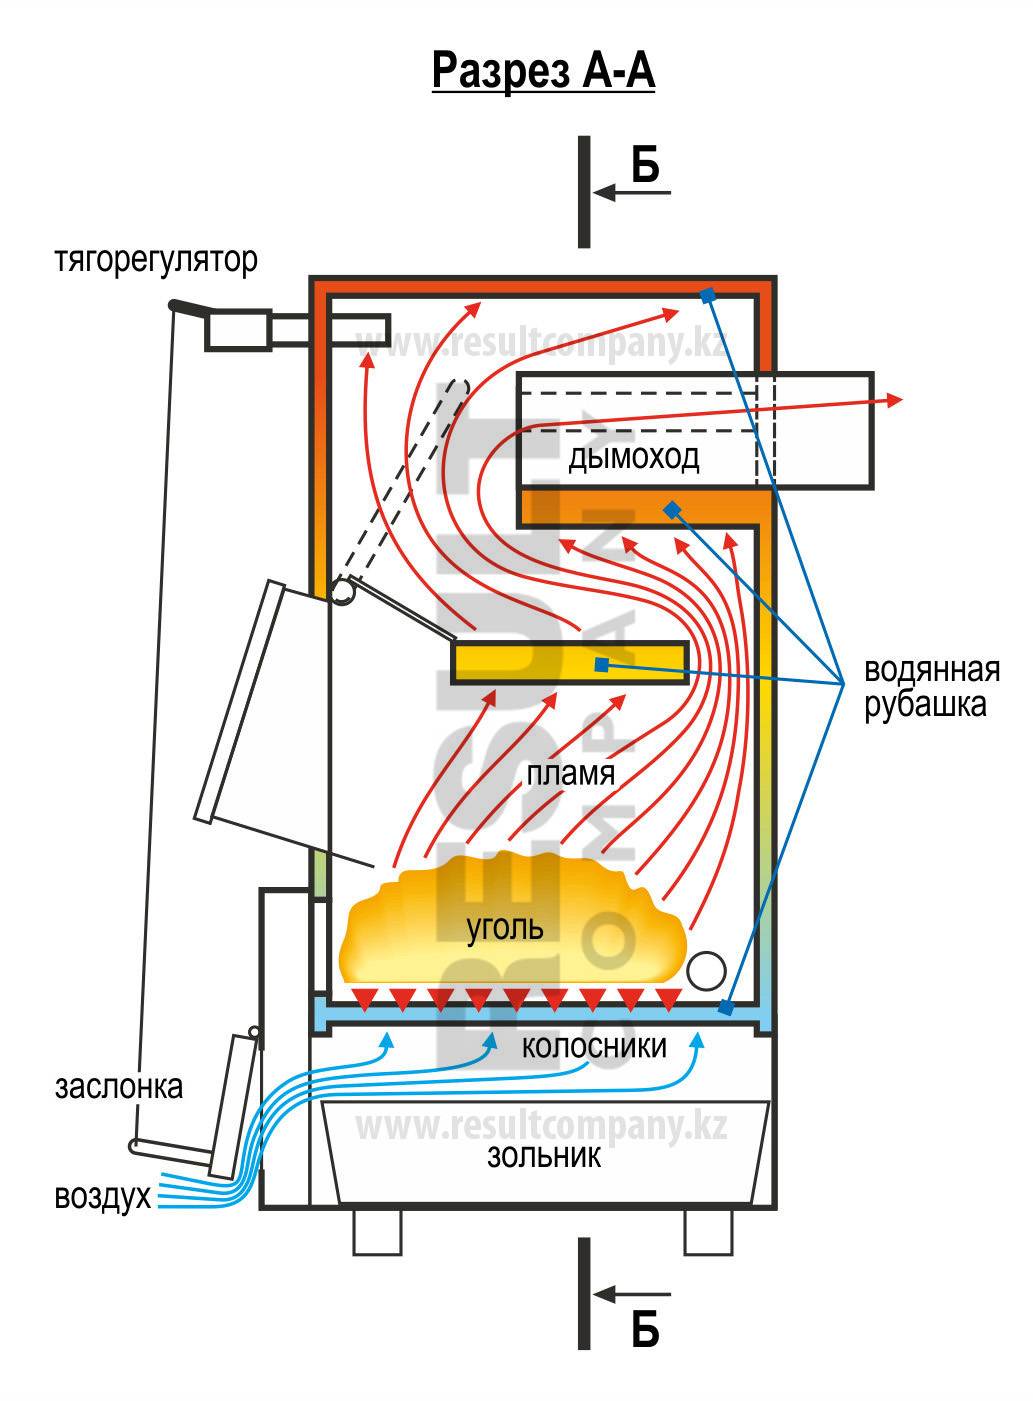 Пиролизная печь «бубафоня» своими руками: схема, чертеж и пошаговая инструкция